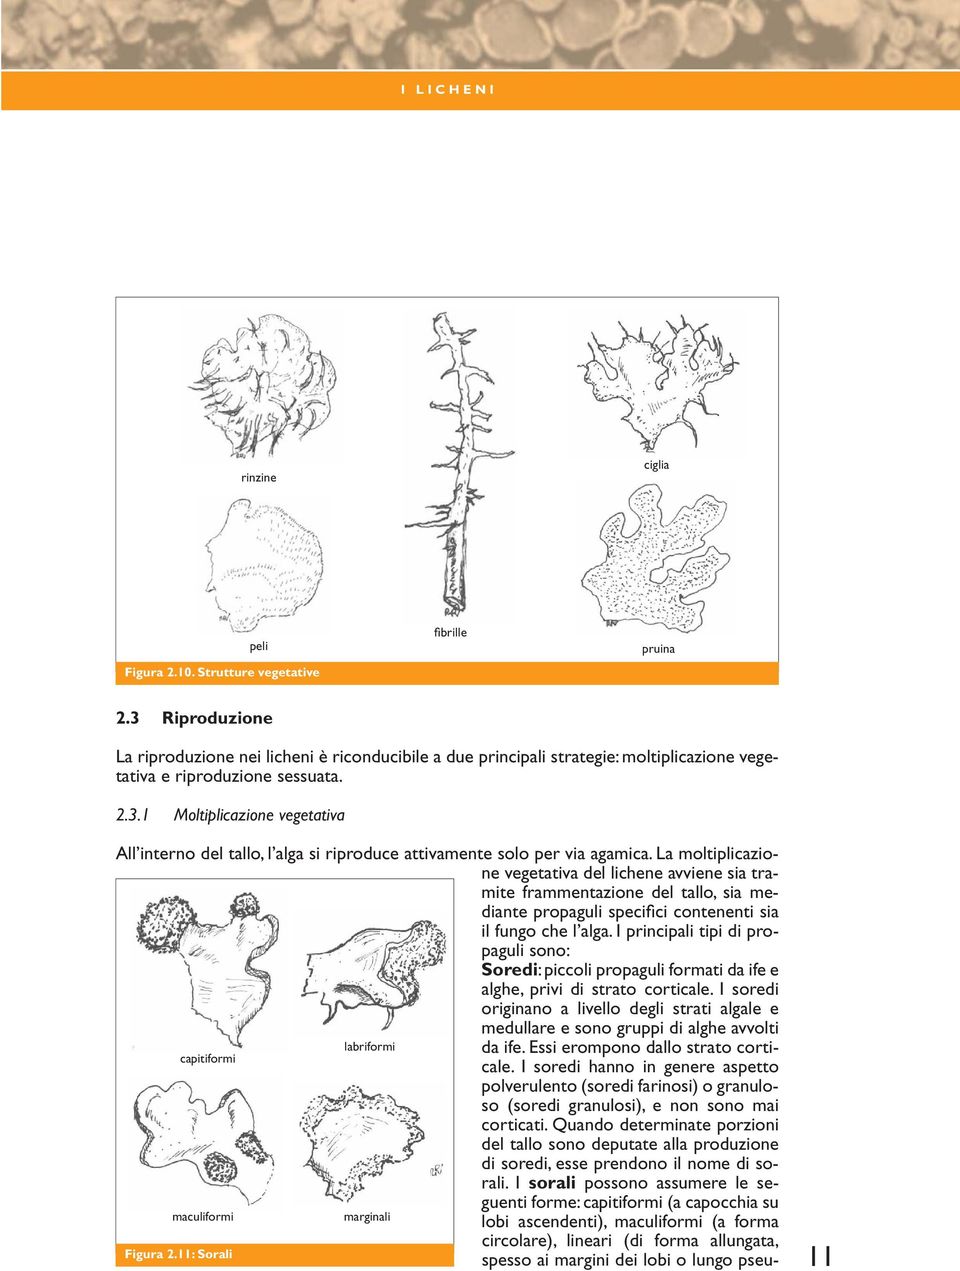 La moltiplicazione vegetativa del lichene avviene sia tramite frammentazione del tallo, sia mediante propaguli specifici contenenti sia il fungo che l alga.